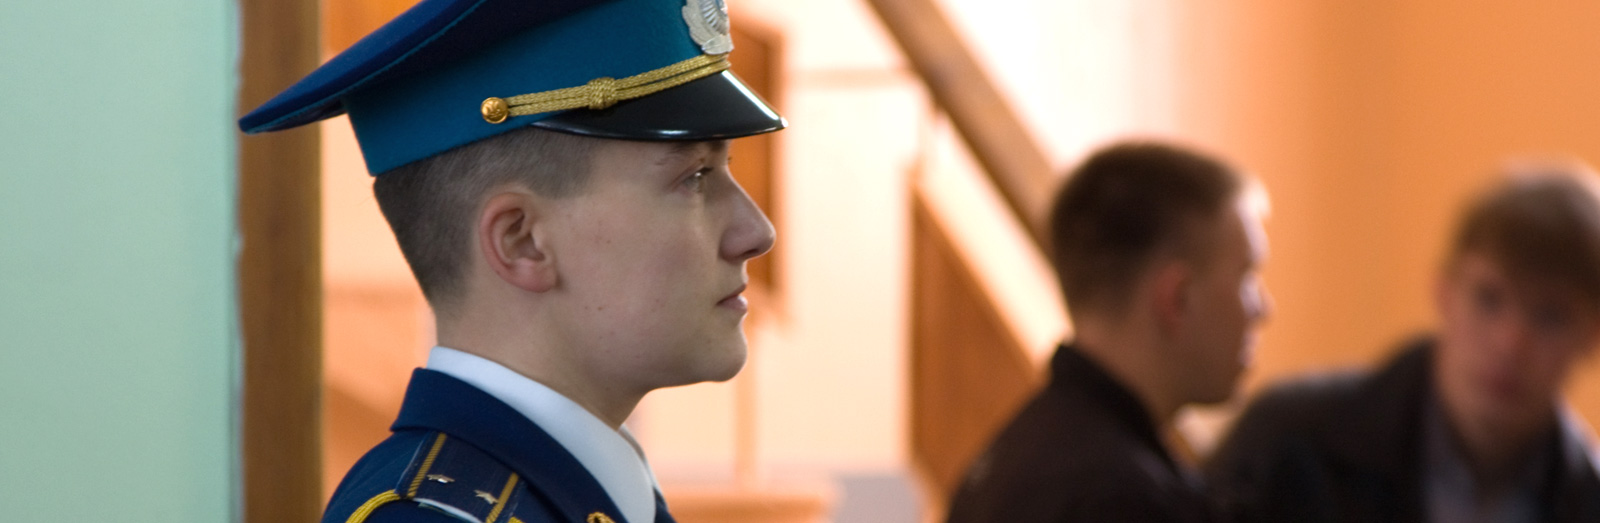 Куля проти Кремля. Як льотчиця Надя Савченко стала символом українського опору